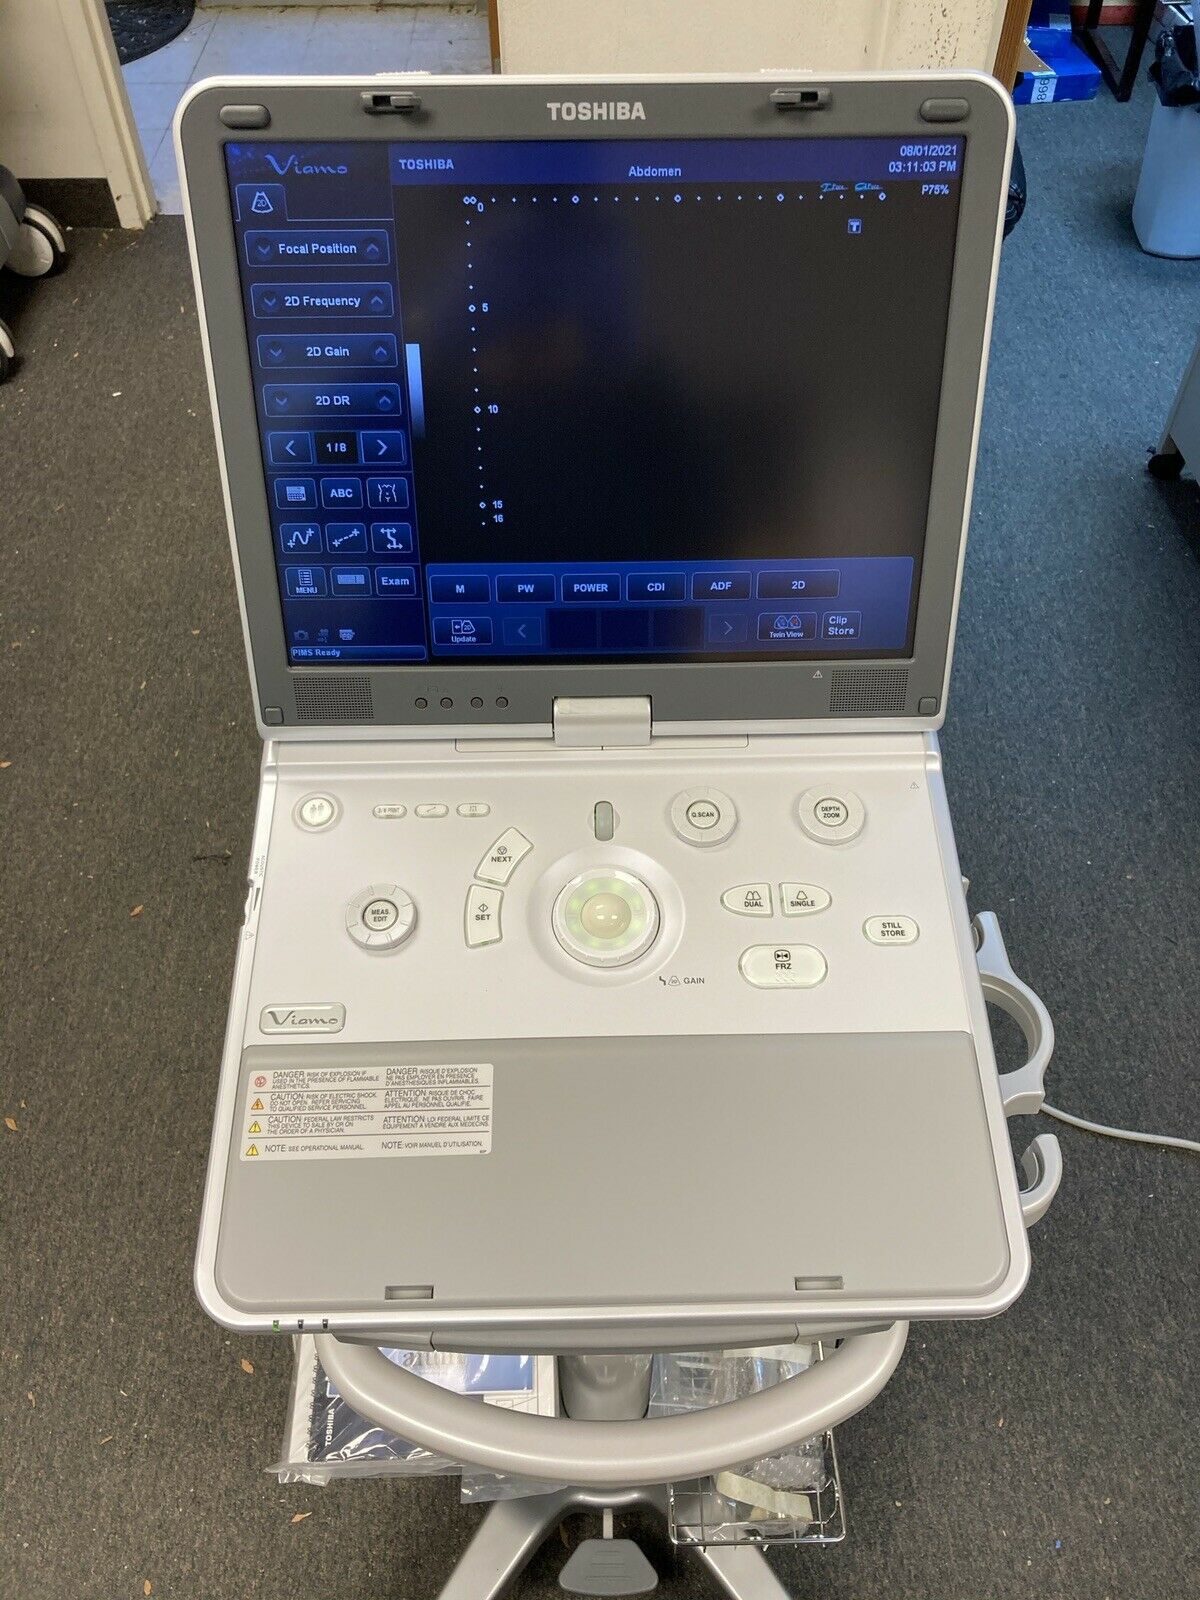 Toshiba Viamo Ultrasound System Model SSA-640A